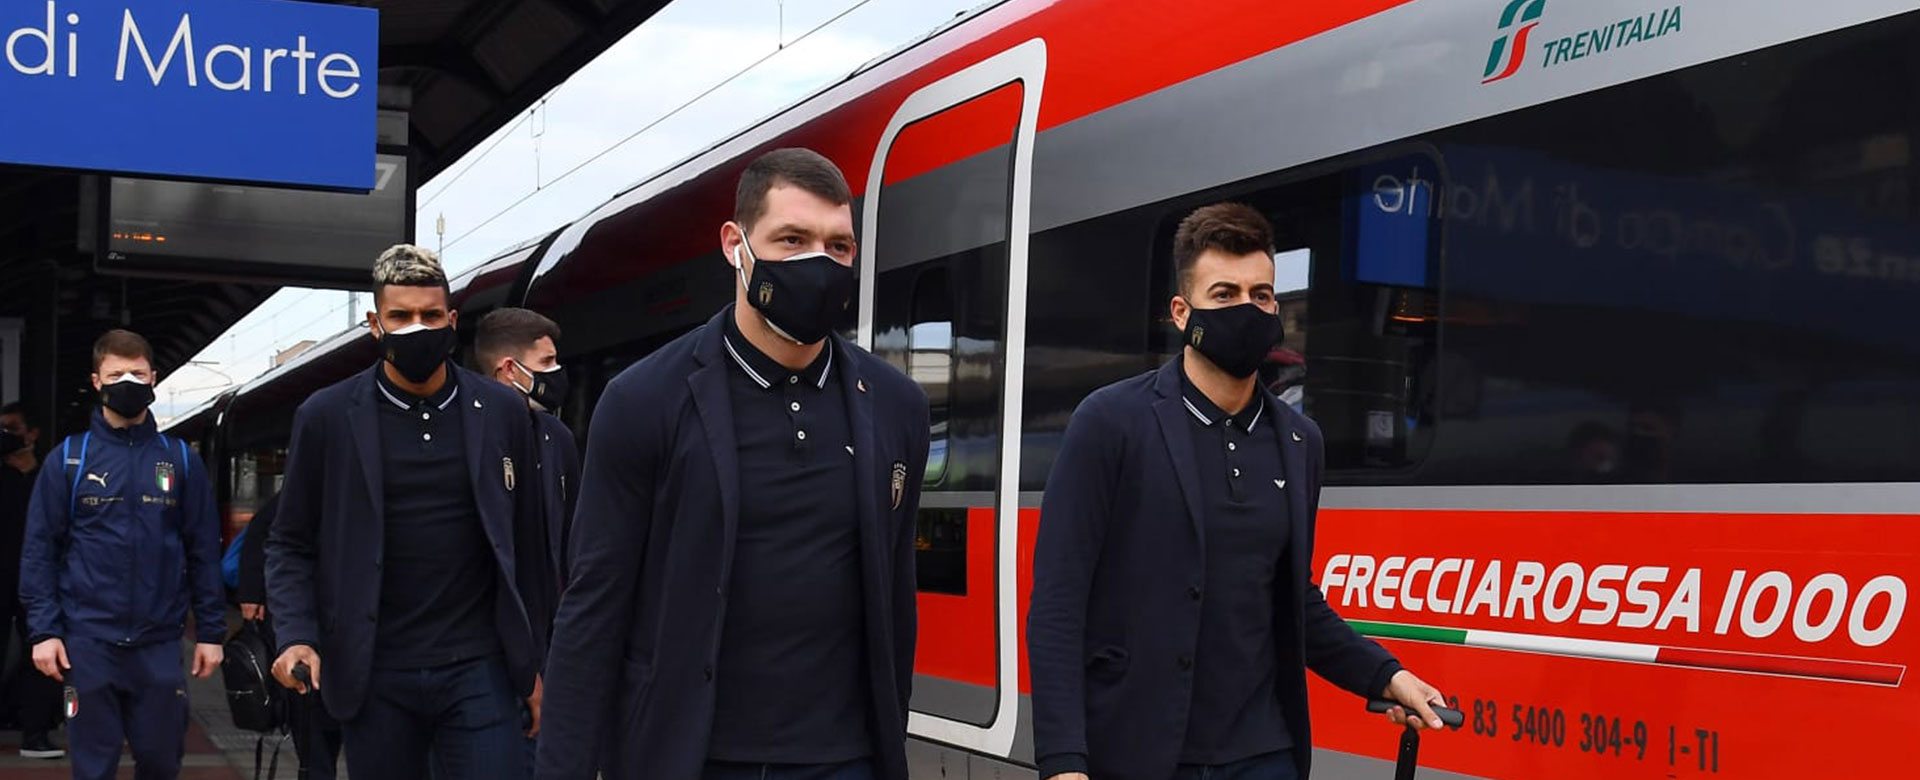 I calciatori della Nazionale in procinto di salire a bordo del Frecciarossa 1000 per la trasferta a Reggio Emilia in occasione della gara contro la Polonia del 15 novembre 2020